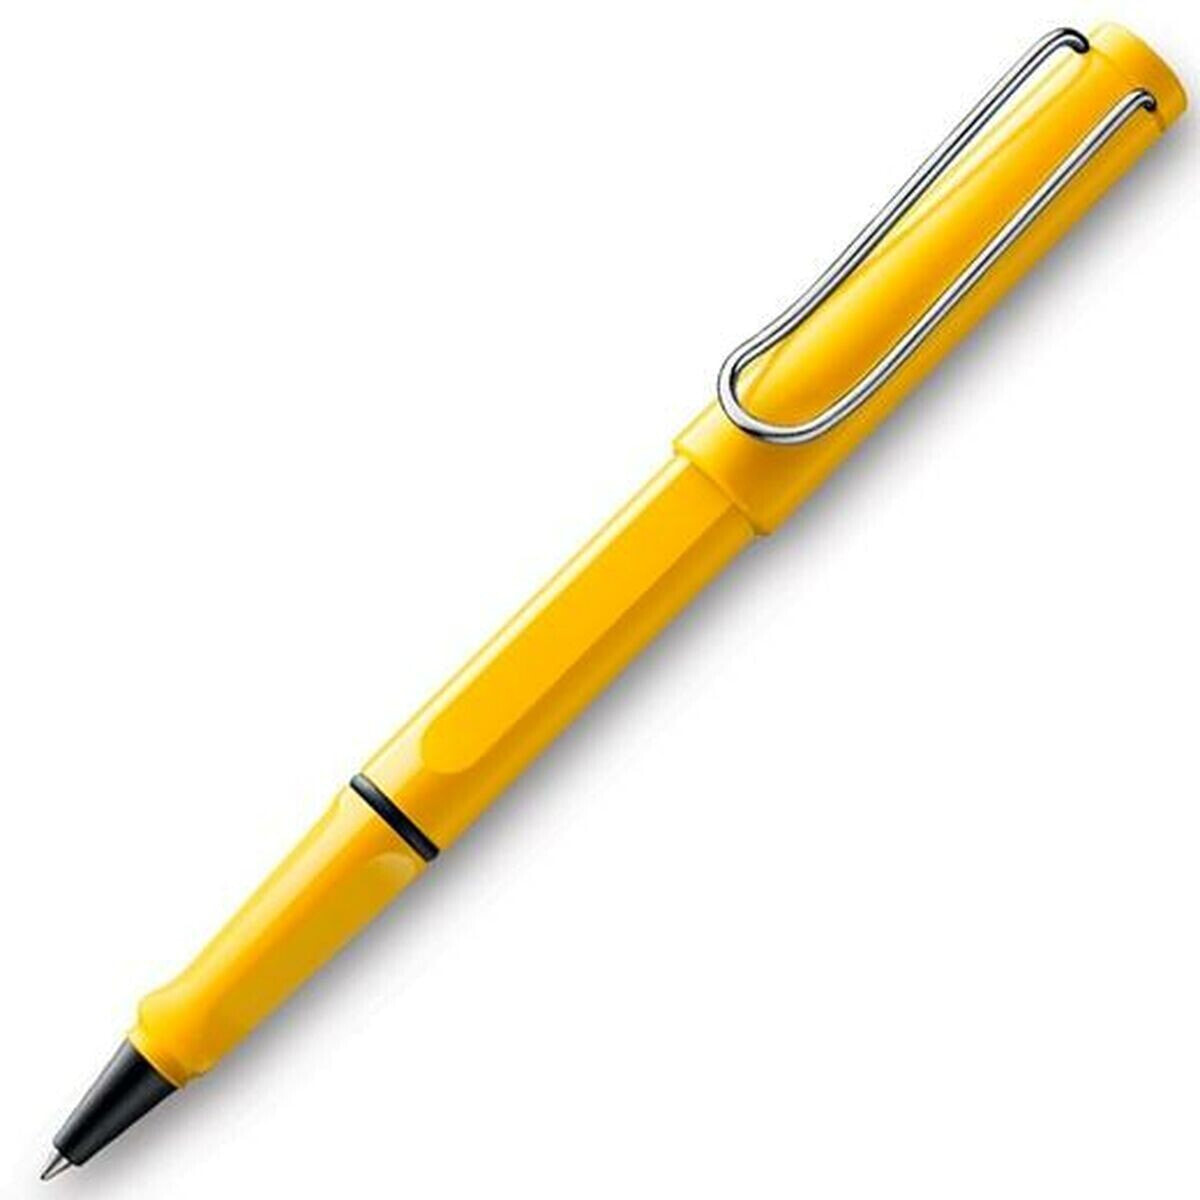 Liquid ink pen Lamy Safari Yellow Blue